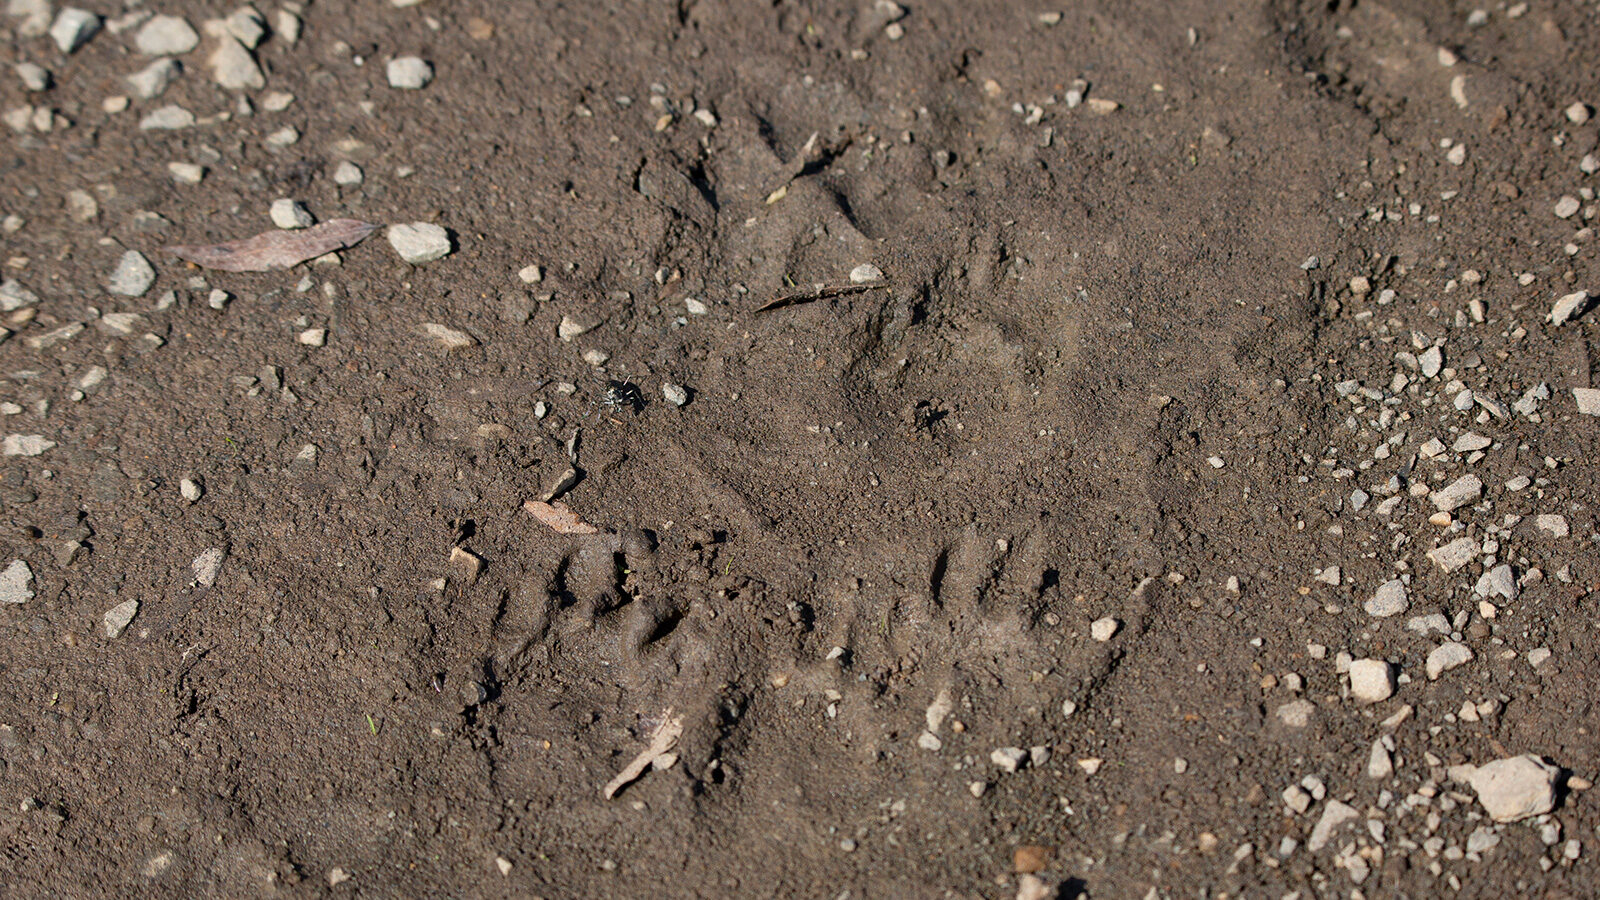 Striped skunk tracks in loose mud